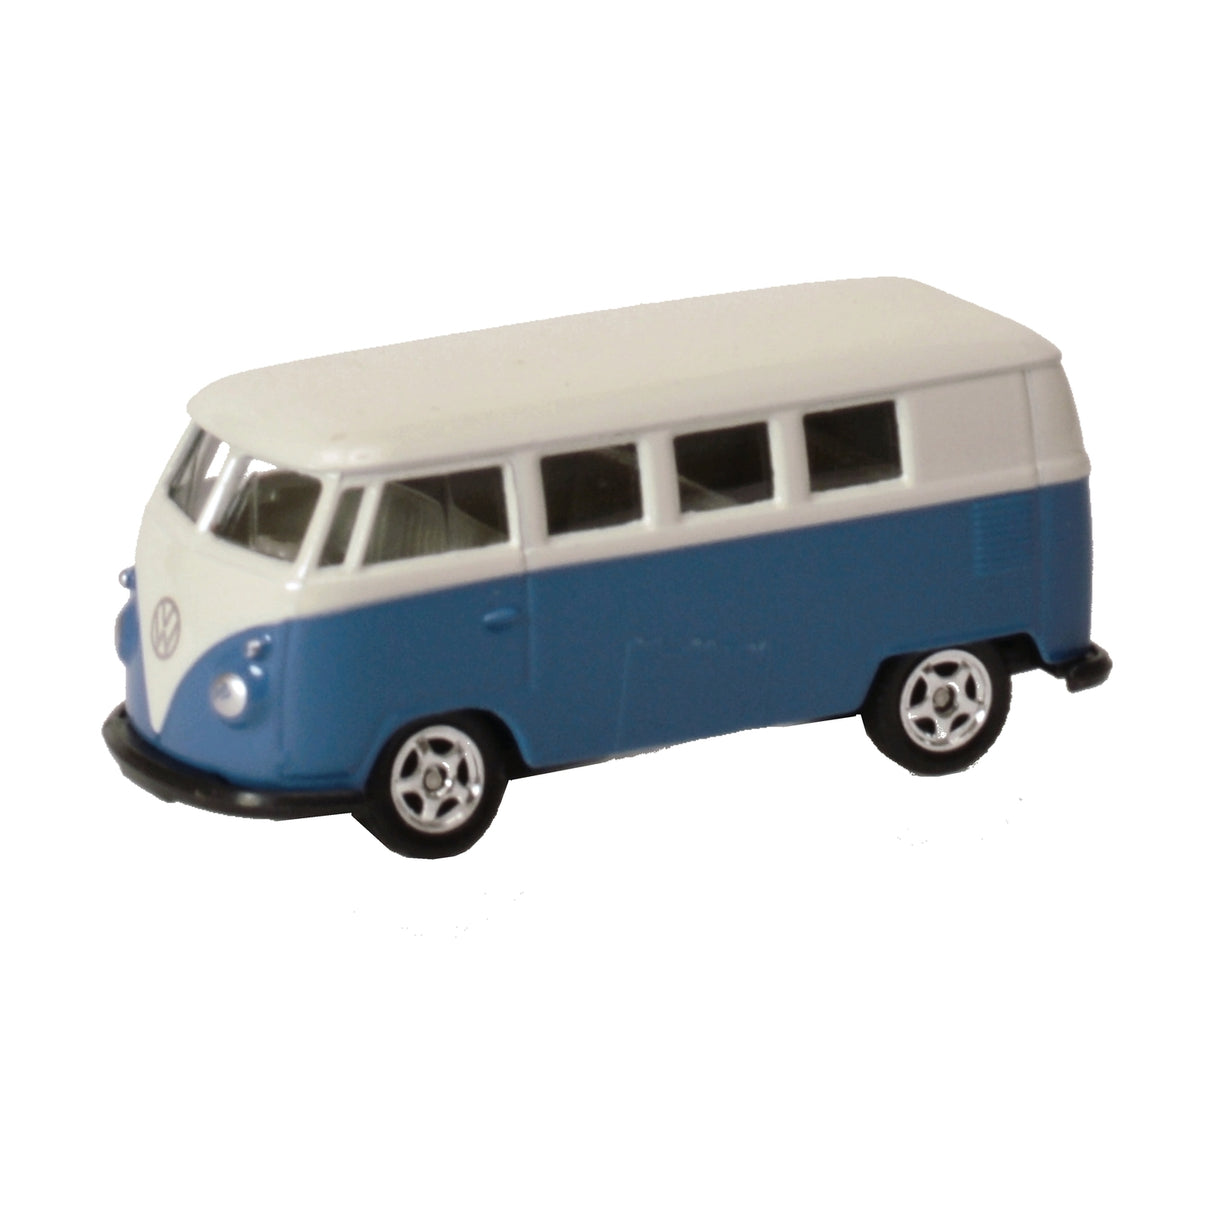 VW Bulli Modellauto 1:60  Kaufen Sie jetzt Ihren VW T1 Bus 1963! -  Modellbus cool retro Männer Geschenk 1963 Auto Modell Modellauto. –